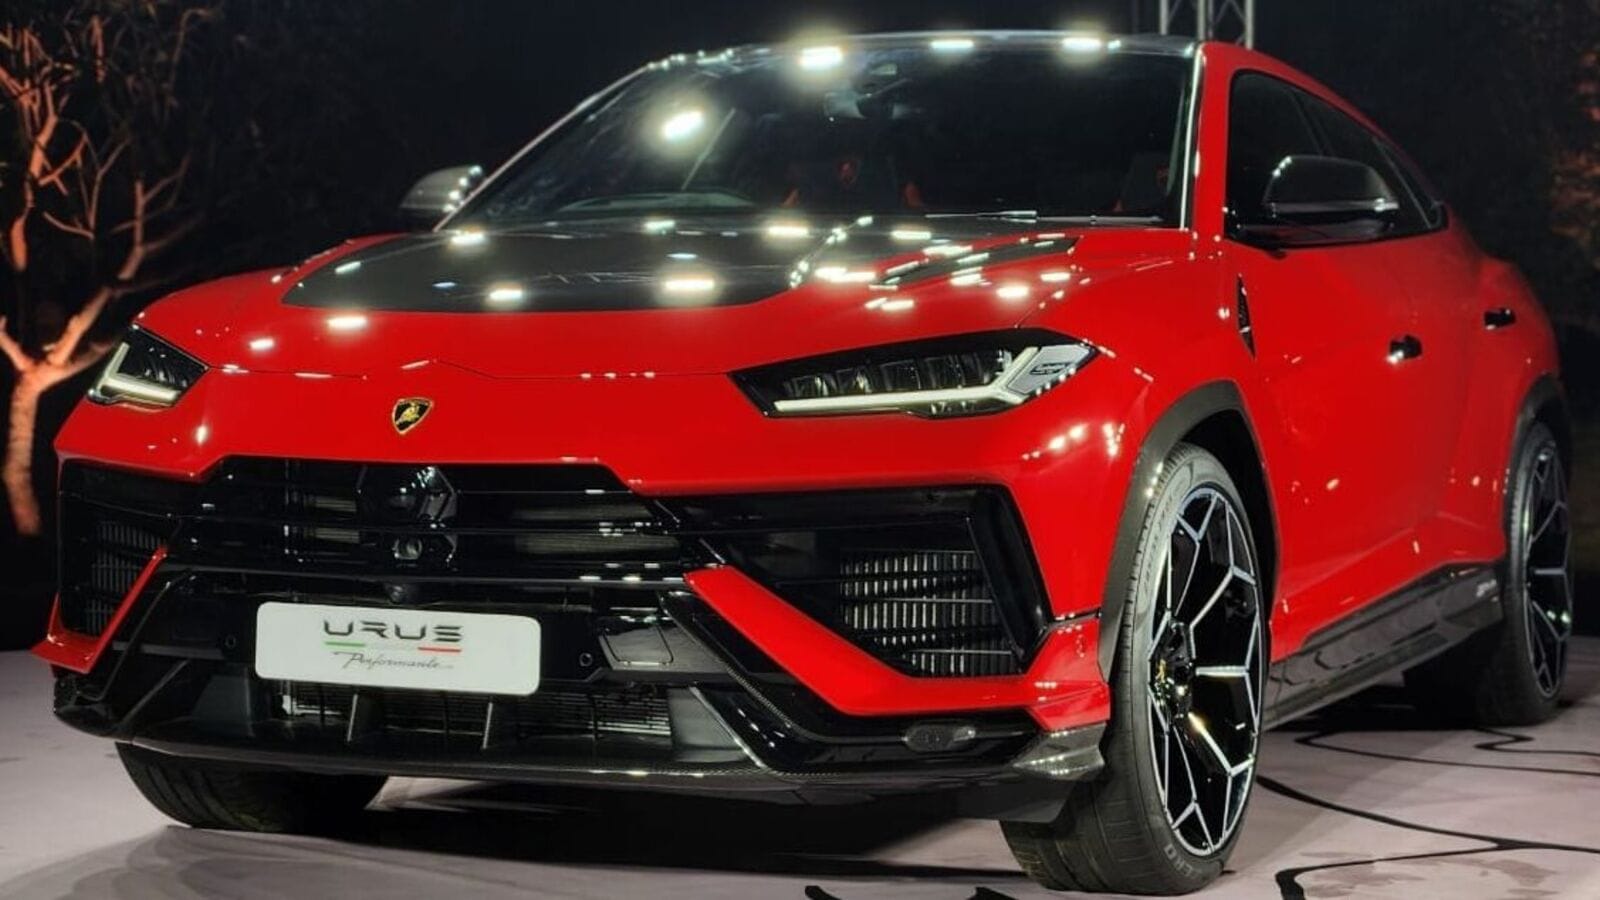 In pics: Lamborghini Urus Performante is world's fastest SUV